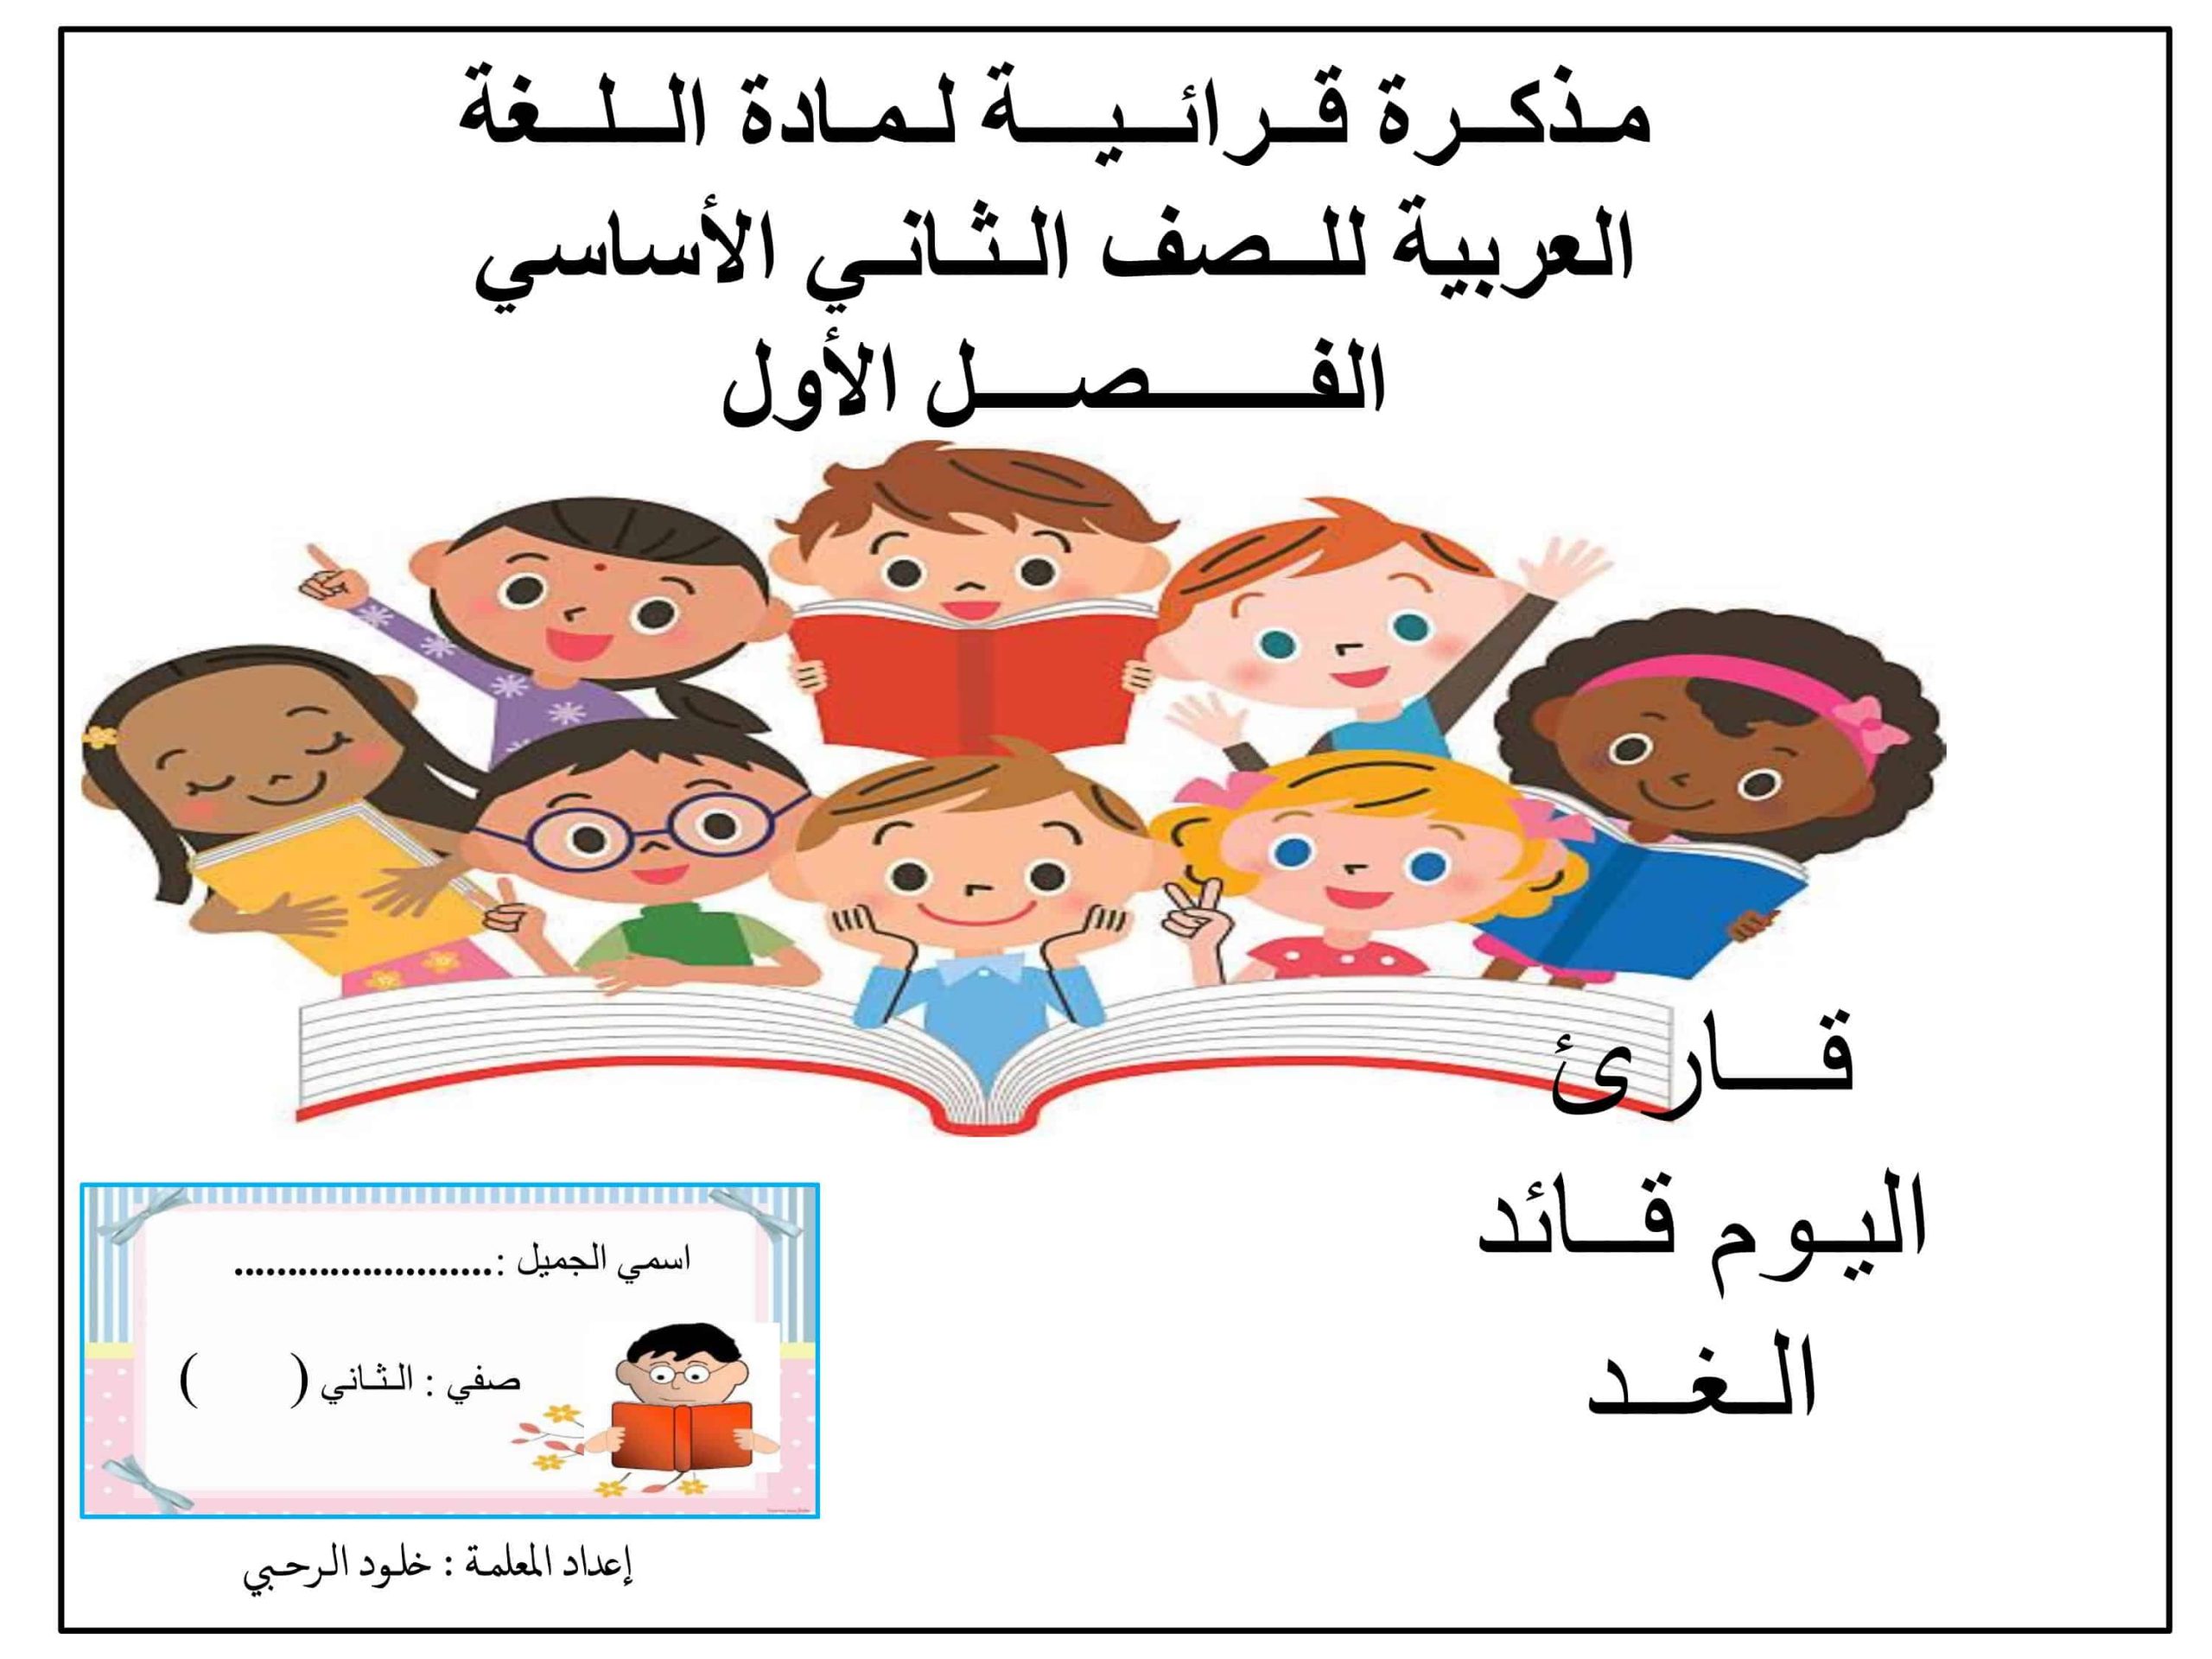 مذكرة قرائية الفصل الدراسي الاول الصف الثاني مادة اللغة العربية